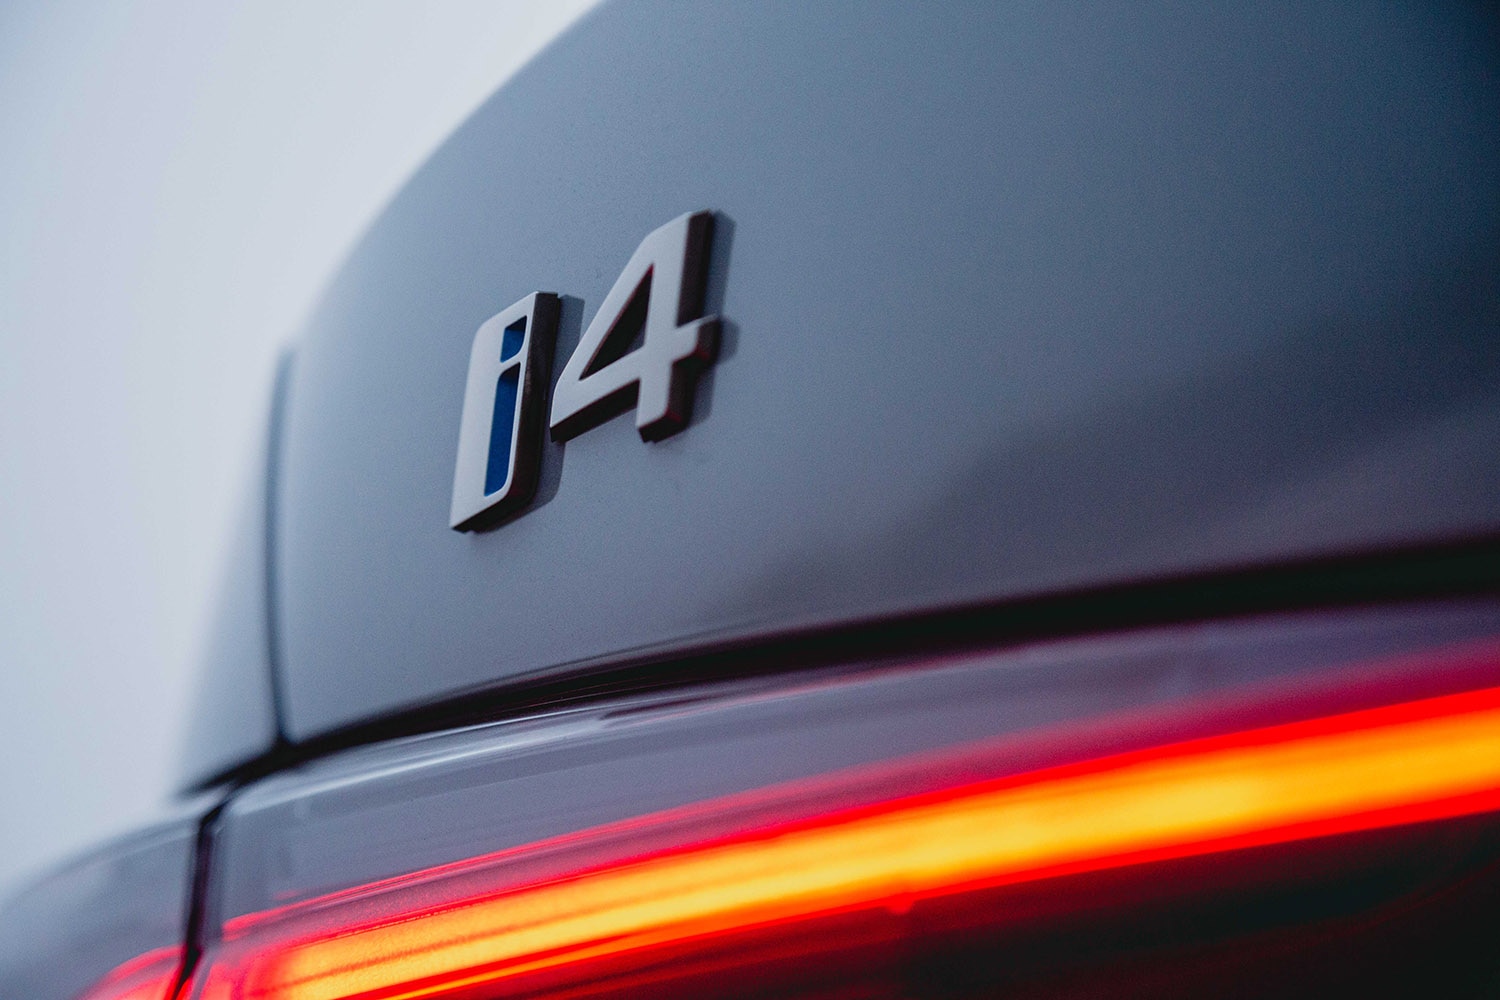 2022 BMW i4 badge, logo